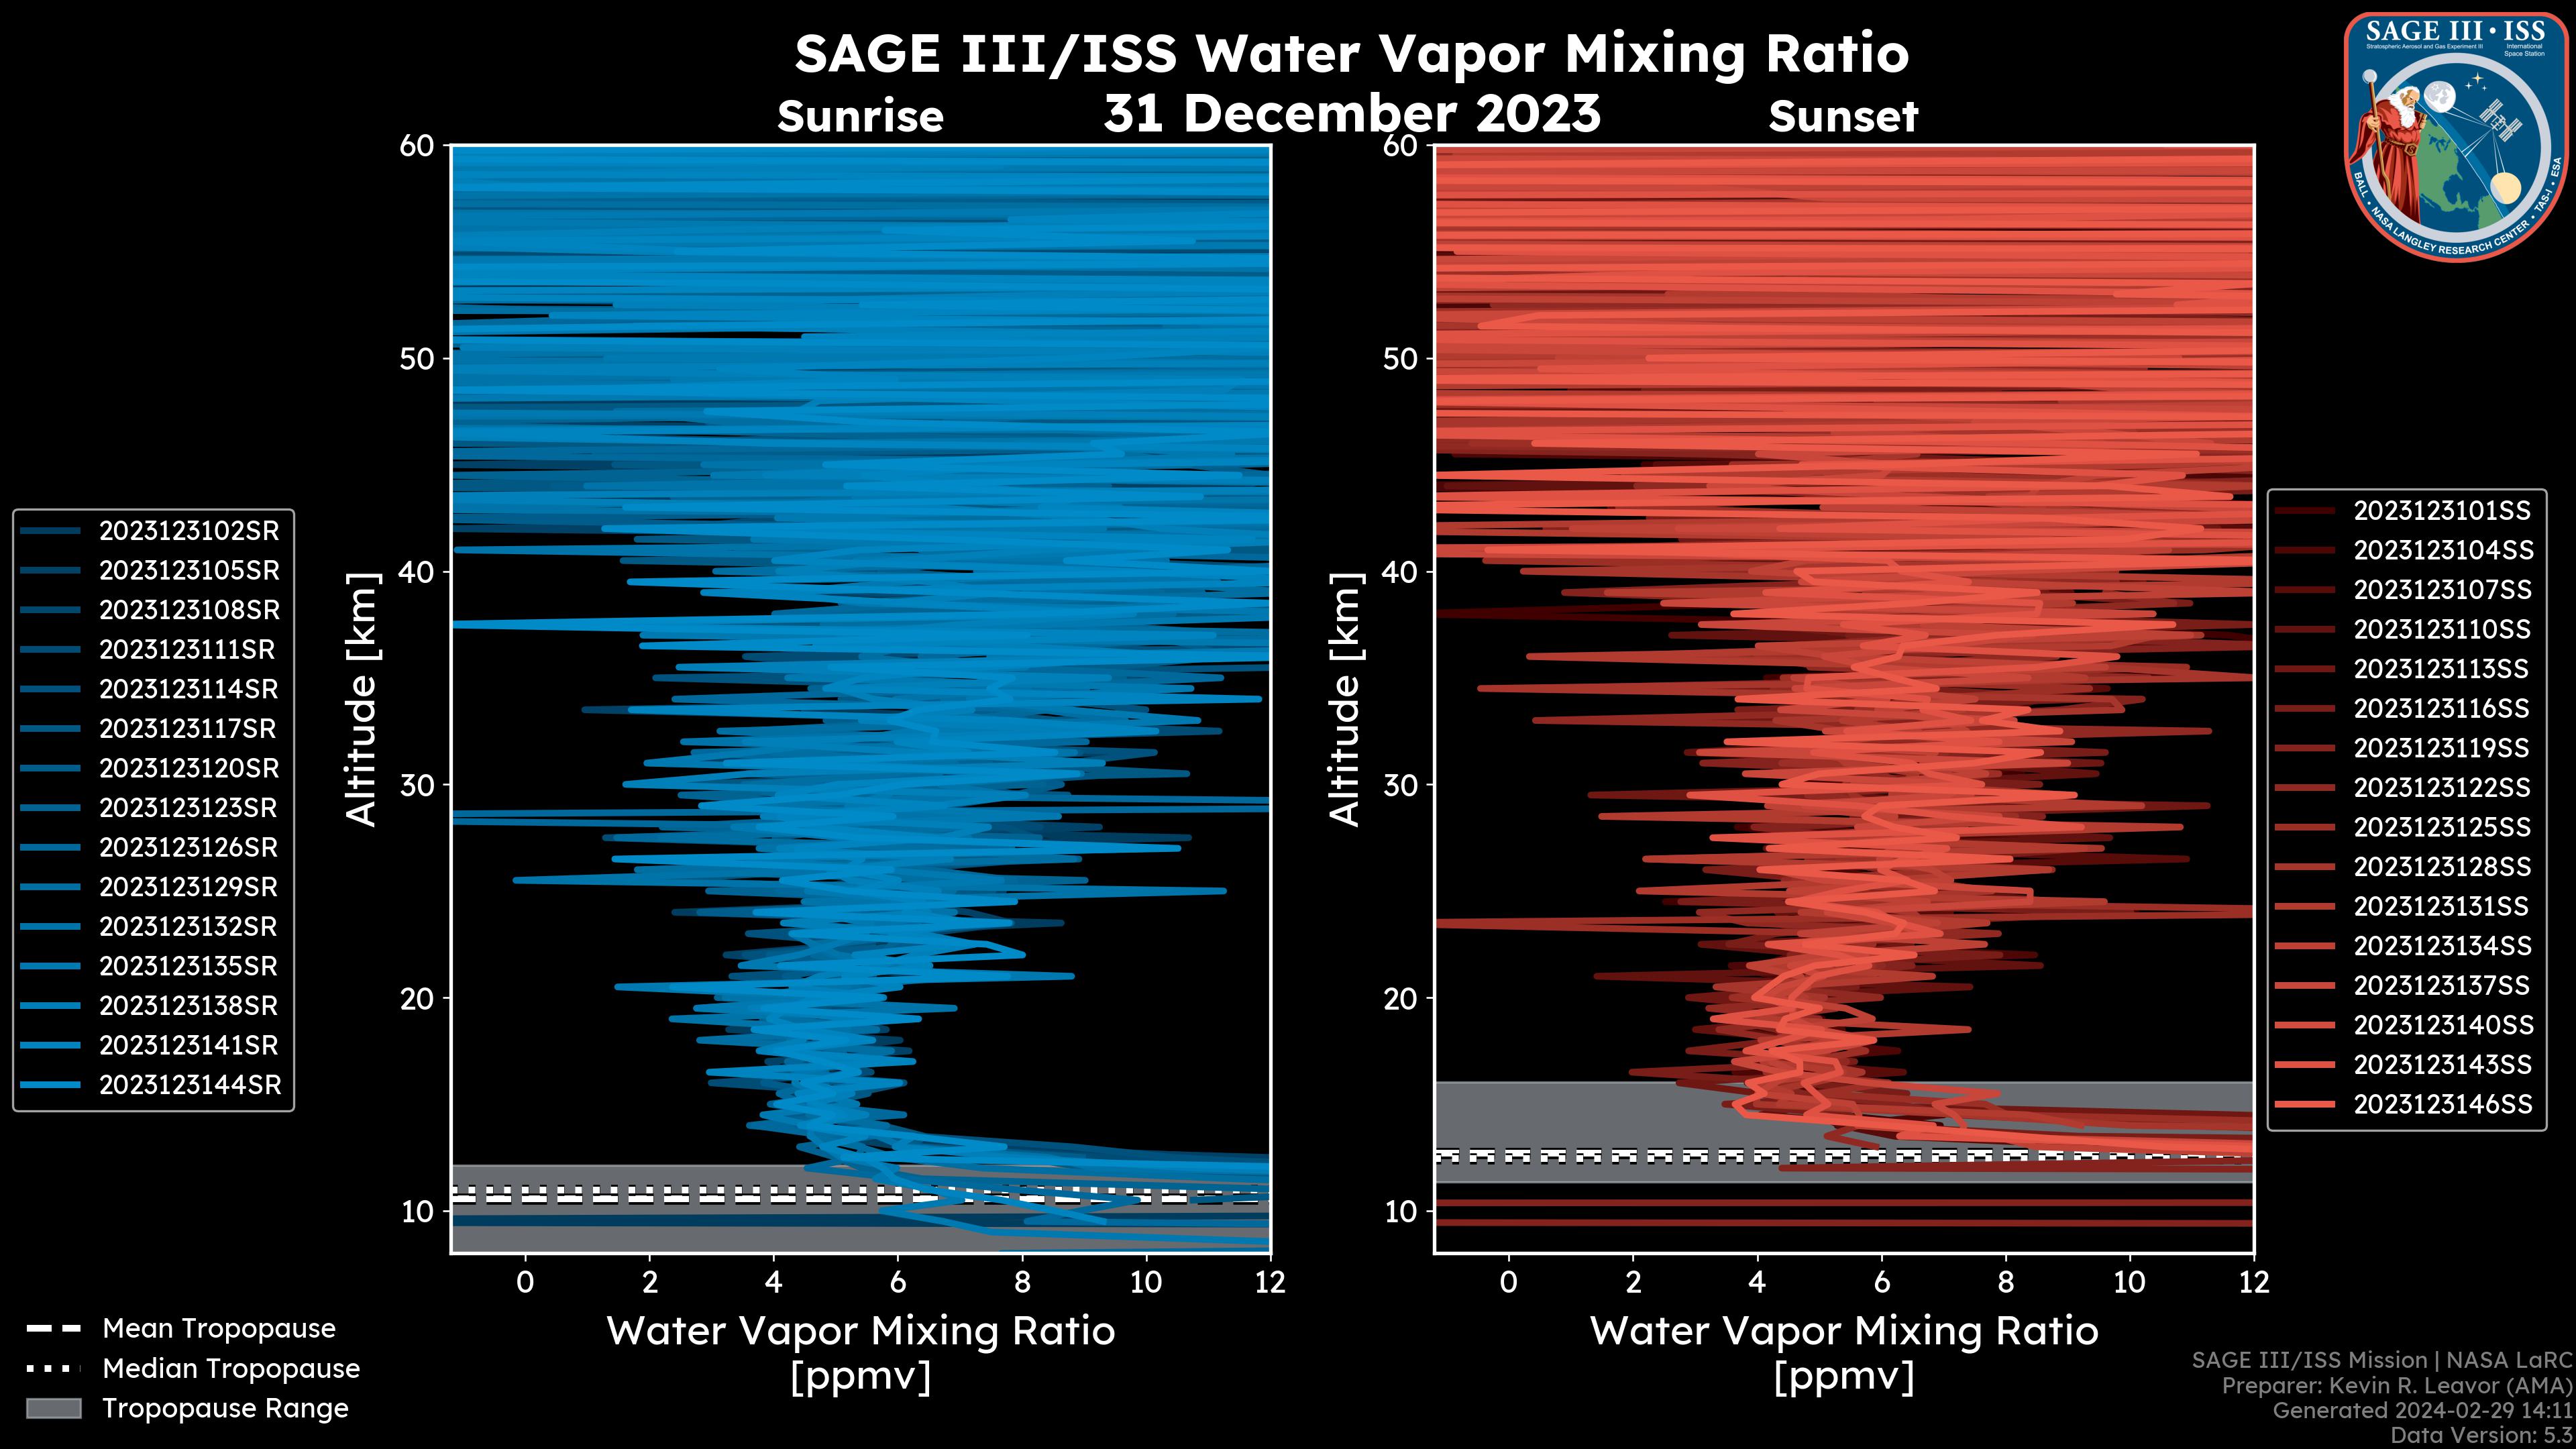 Water Vapor Mixing Ratio